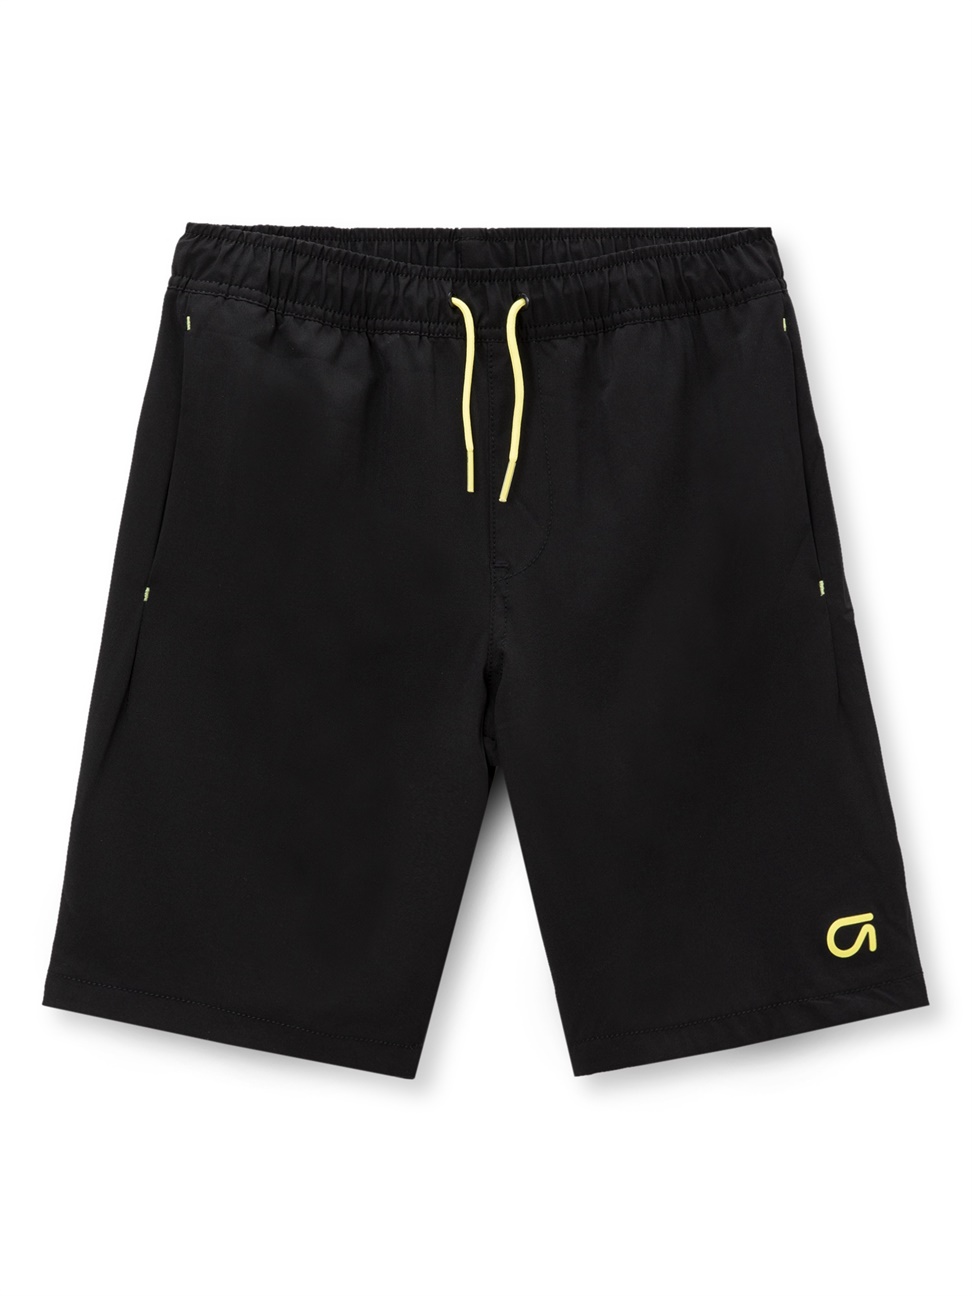 男童裝|鬆緊運動短褲 Gap Fit運動系列-正黑色